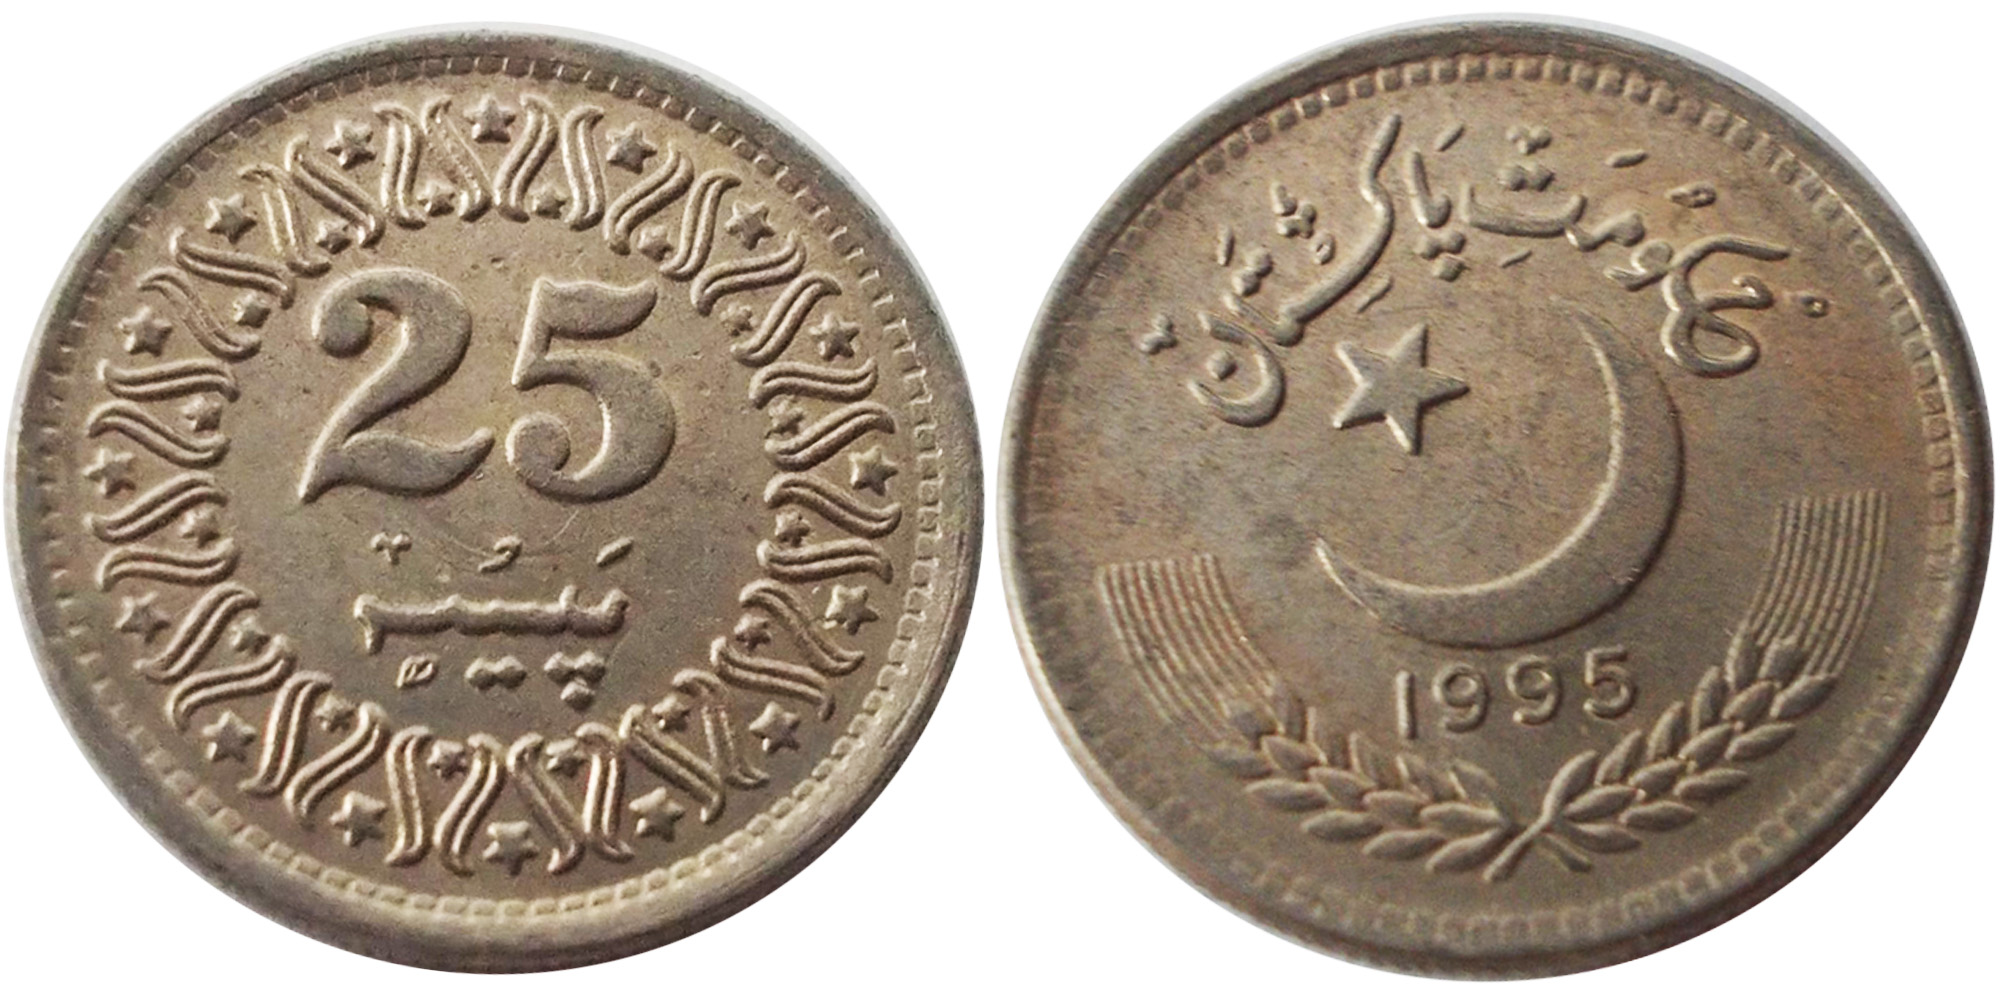 25 пайс 1995 Пакистан